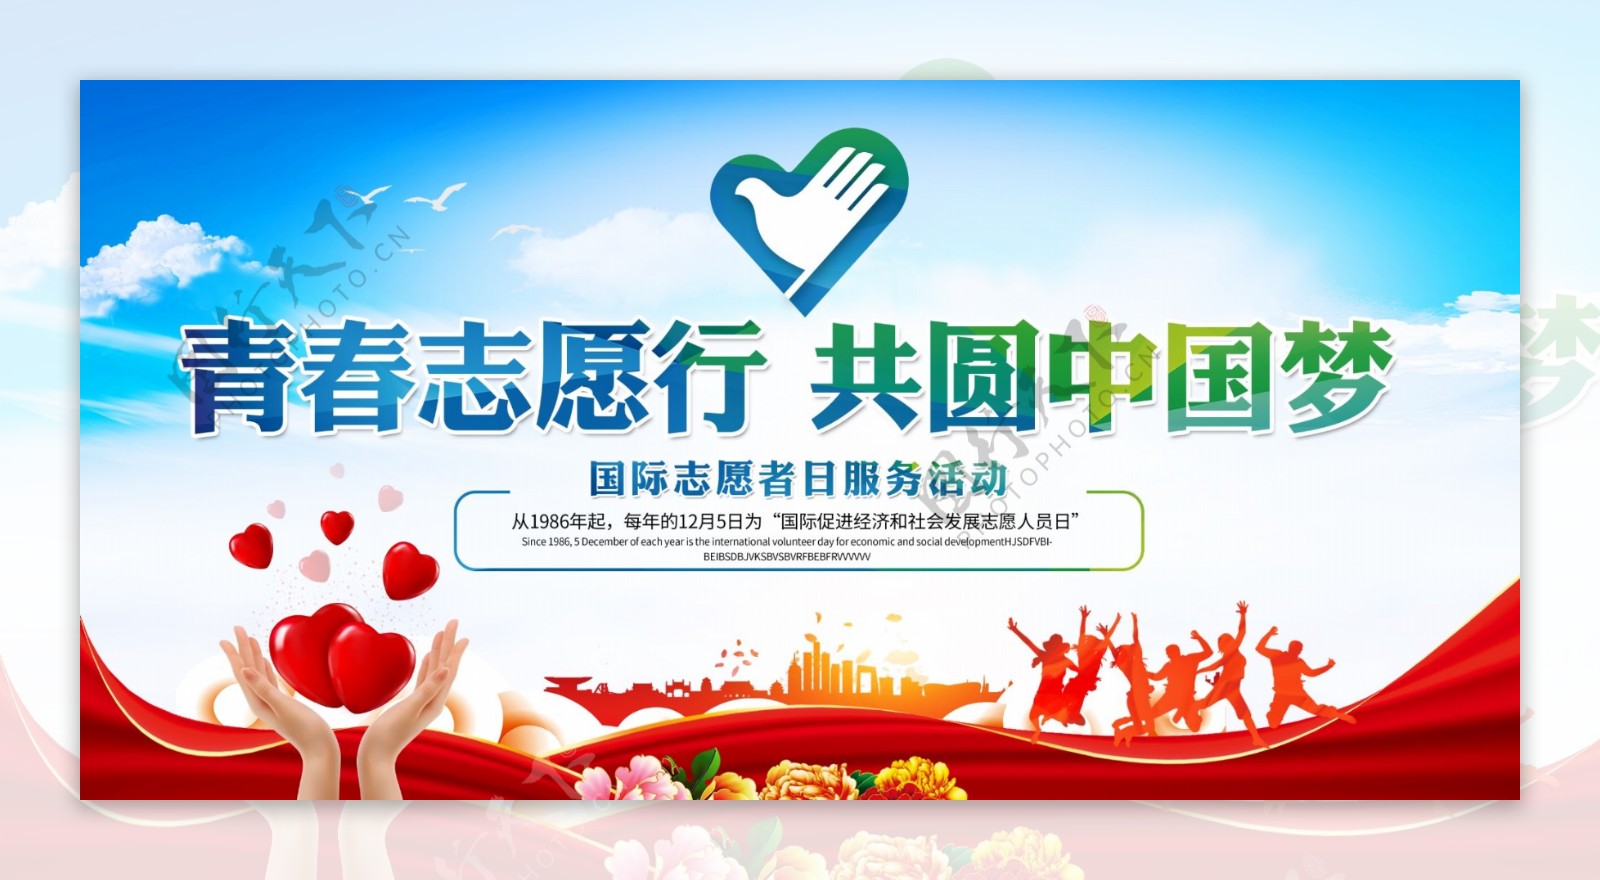 志愿行中国梦活动宣传展板素材